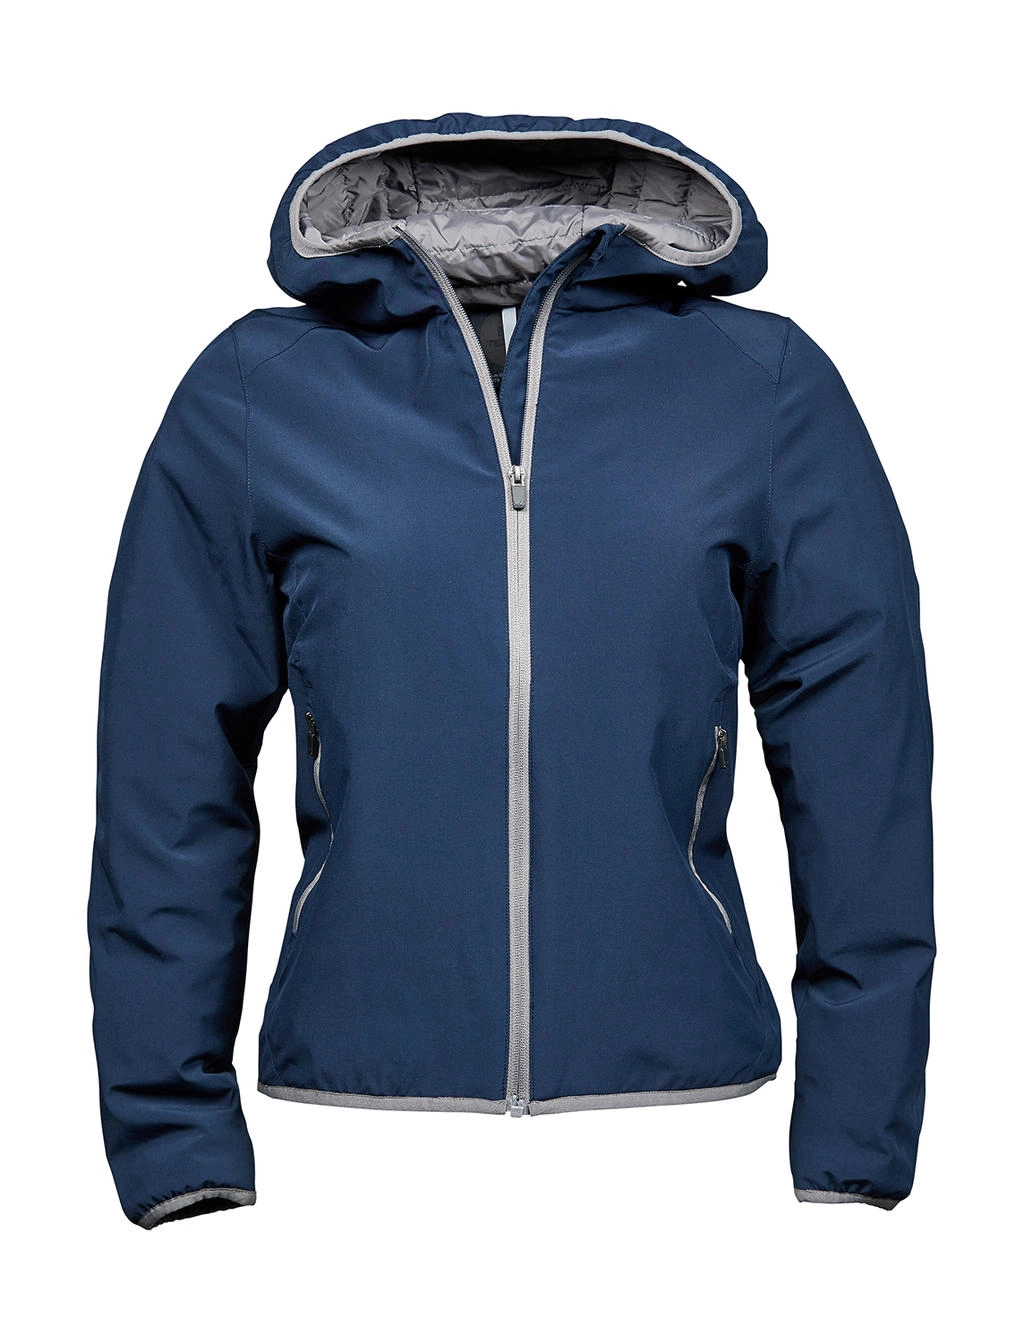 Ladies` Competition Jacket zum Besticken und Bedrucken in der Farbe Navy/Light Grey mit Ihren Logo, Schriftzug oder Motiv.